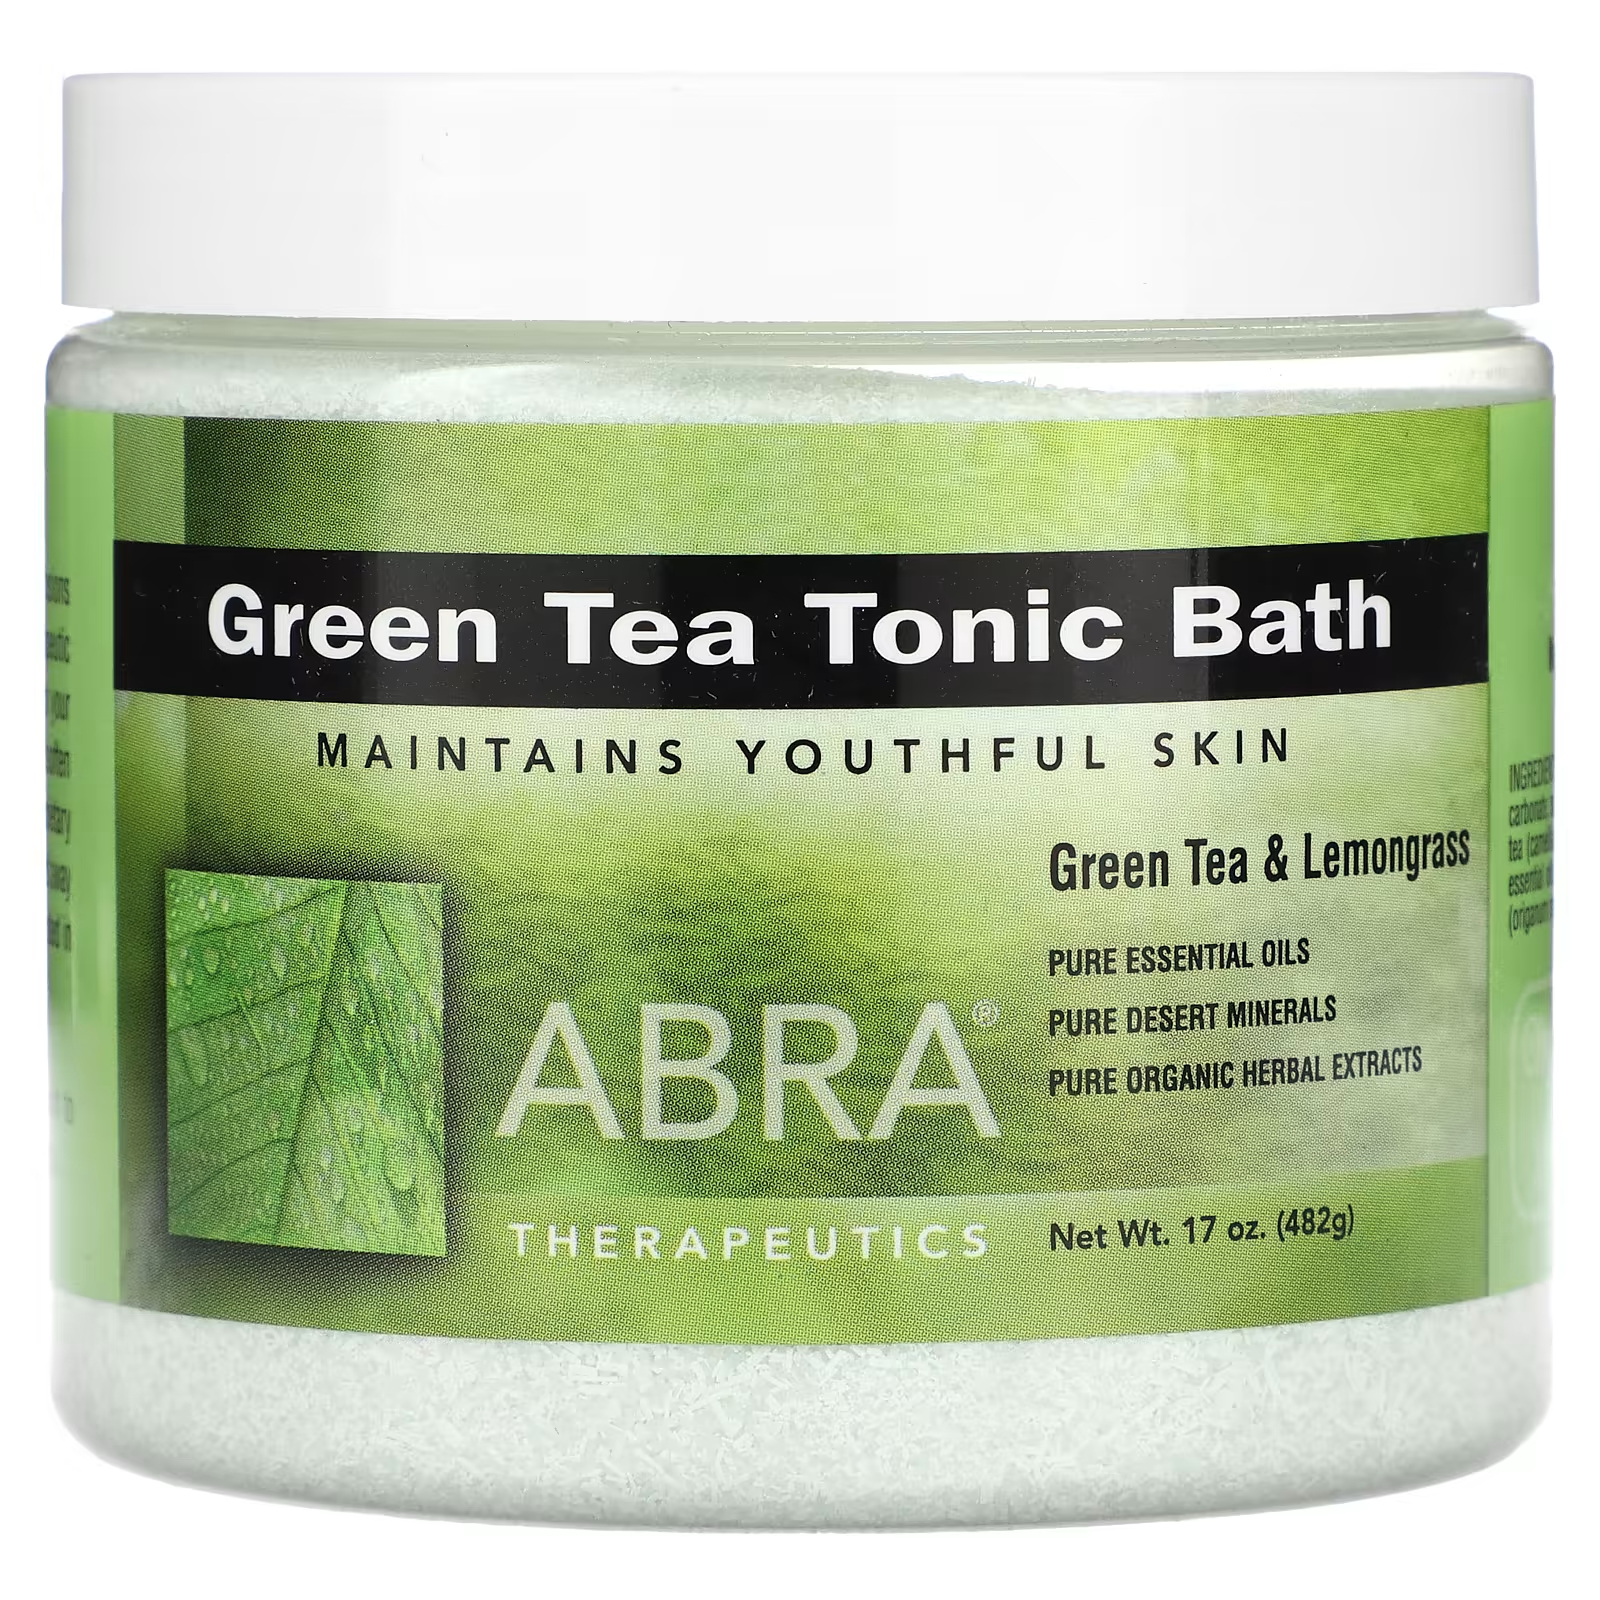 Abracadabra Abra Therapeutics Тоник для ванны с зеленым чаем, 17 унций (482 г) Abracadabra, Abra Therapeutics